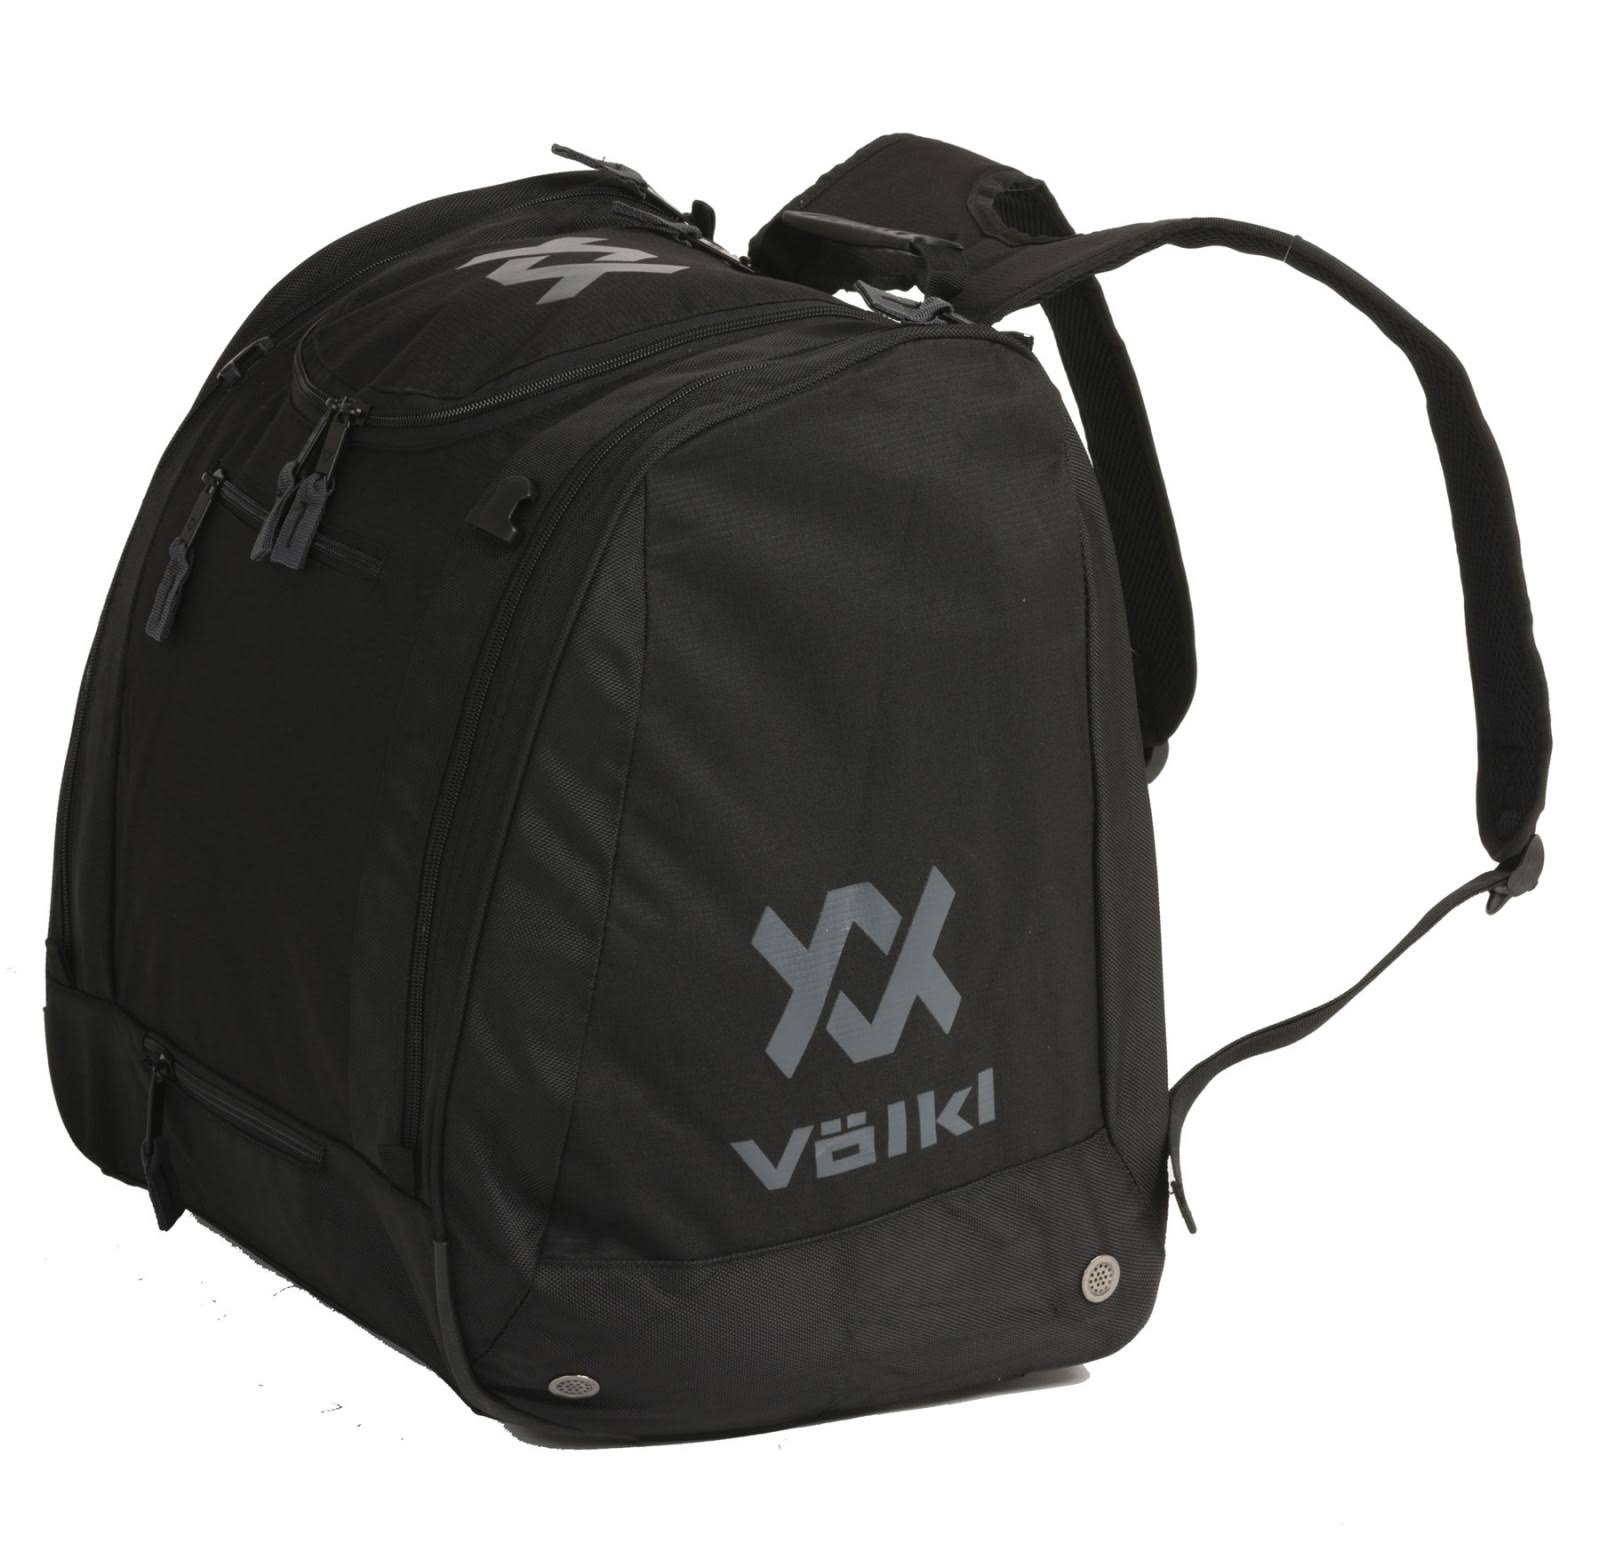 Volkl Deluxe Ski Boot Bag - Black